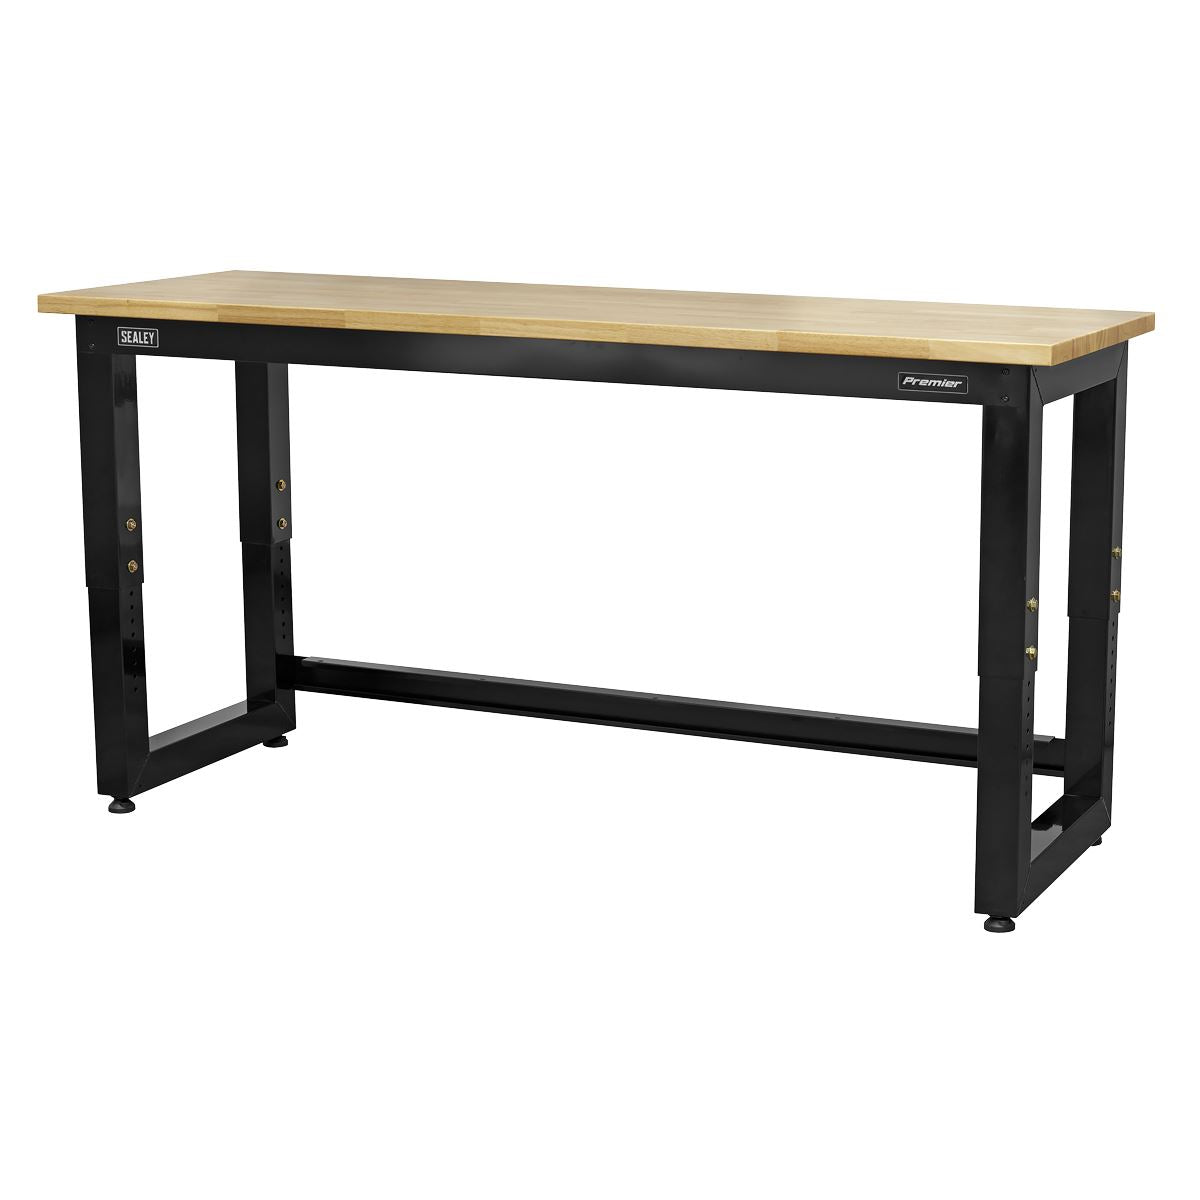 Sealey Premier Steel Adjustable Workbench with Wooden Worktop 1830mm - Heavy-Duty